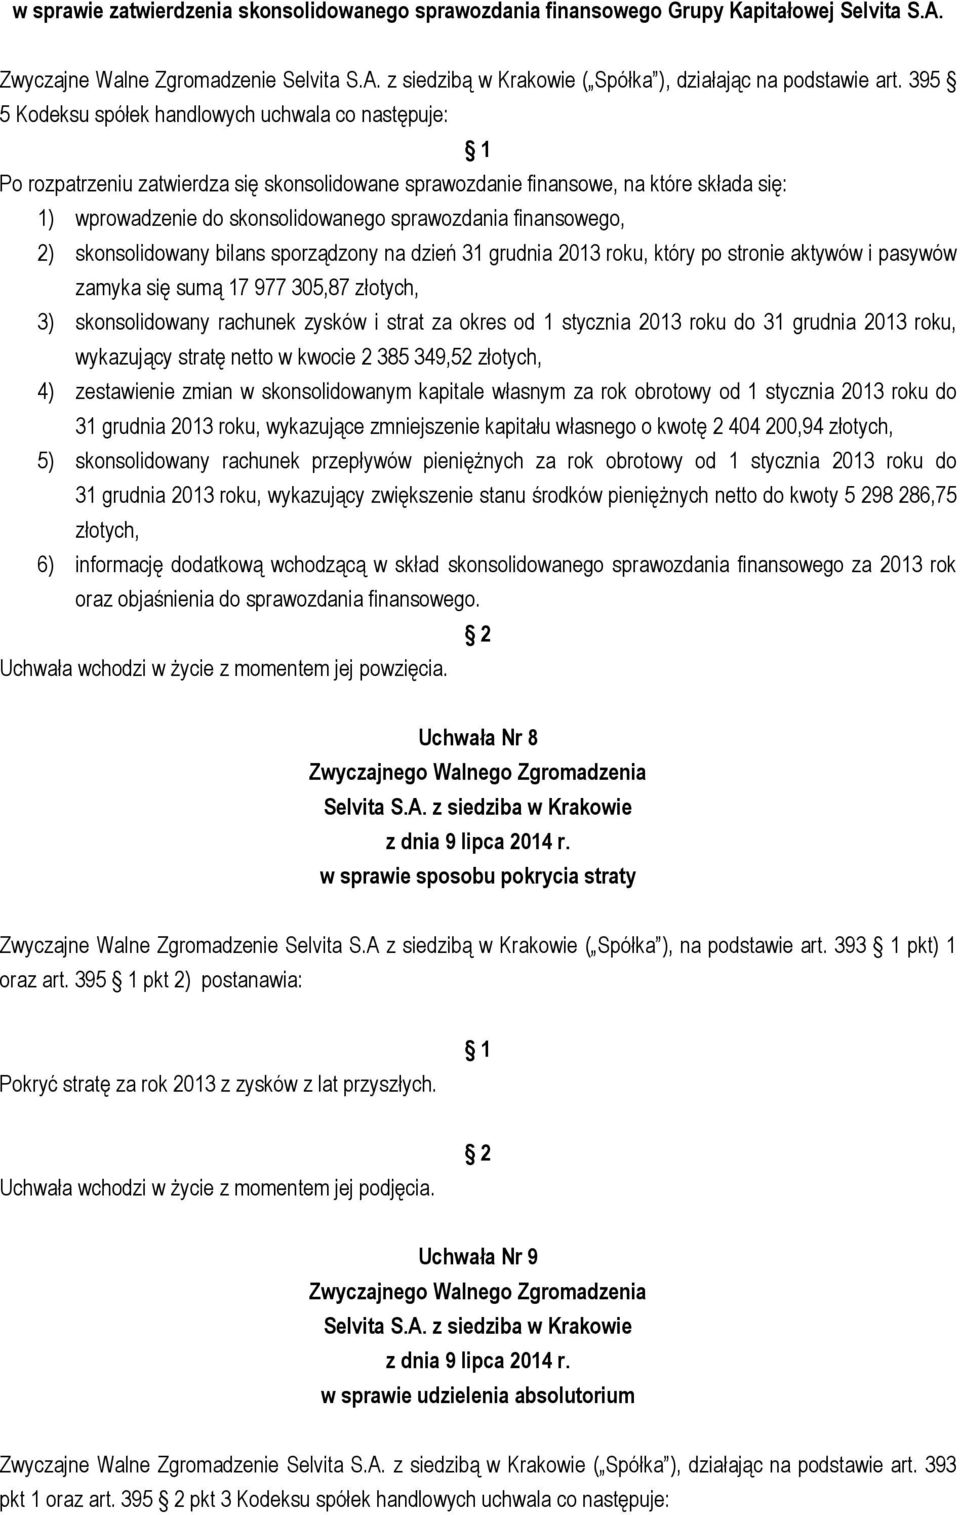 finansowego, 2) skonsolidowany bilans sporządzony na dzień 31 grudnia 2013 roku, który po stronie aktywów i pasywów zamyka się sumą 17 977 305,87 złotych, 3) skonsolidowany rachunek zysków i strat za